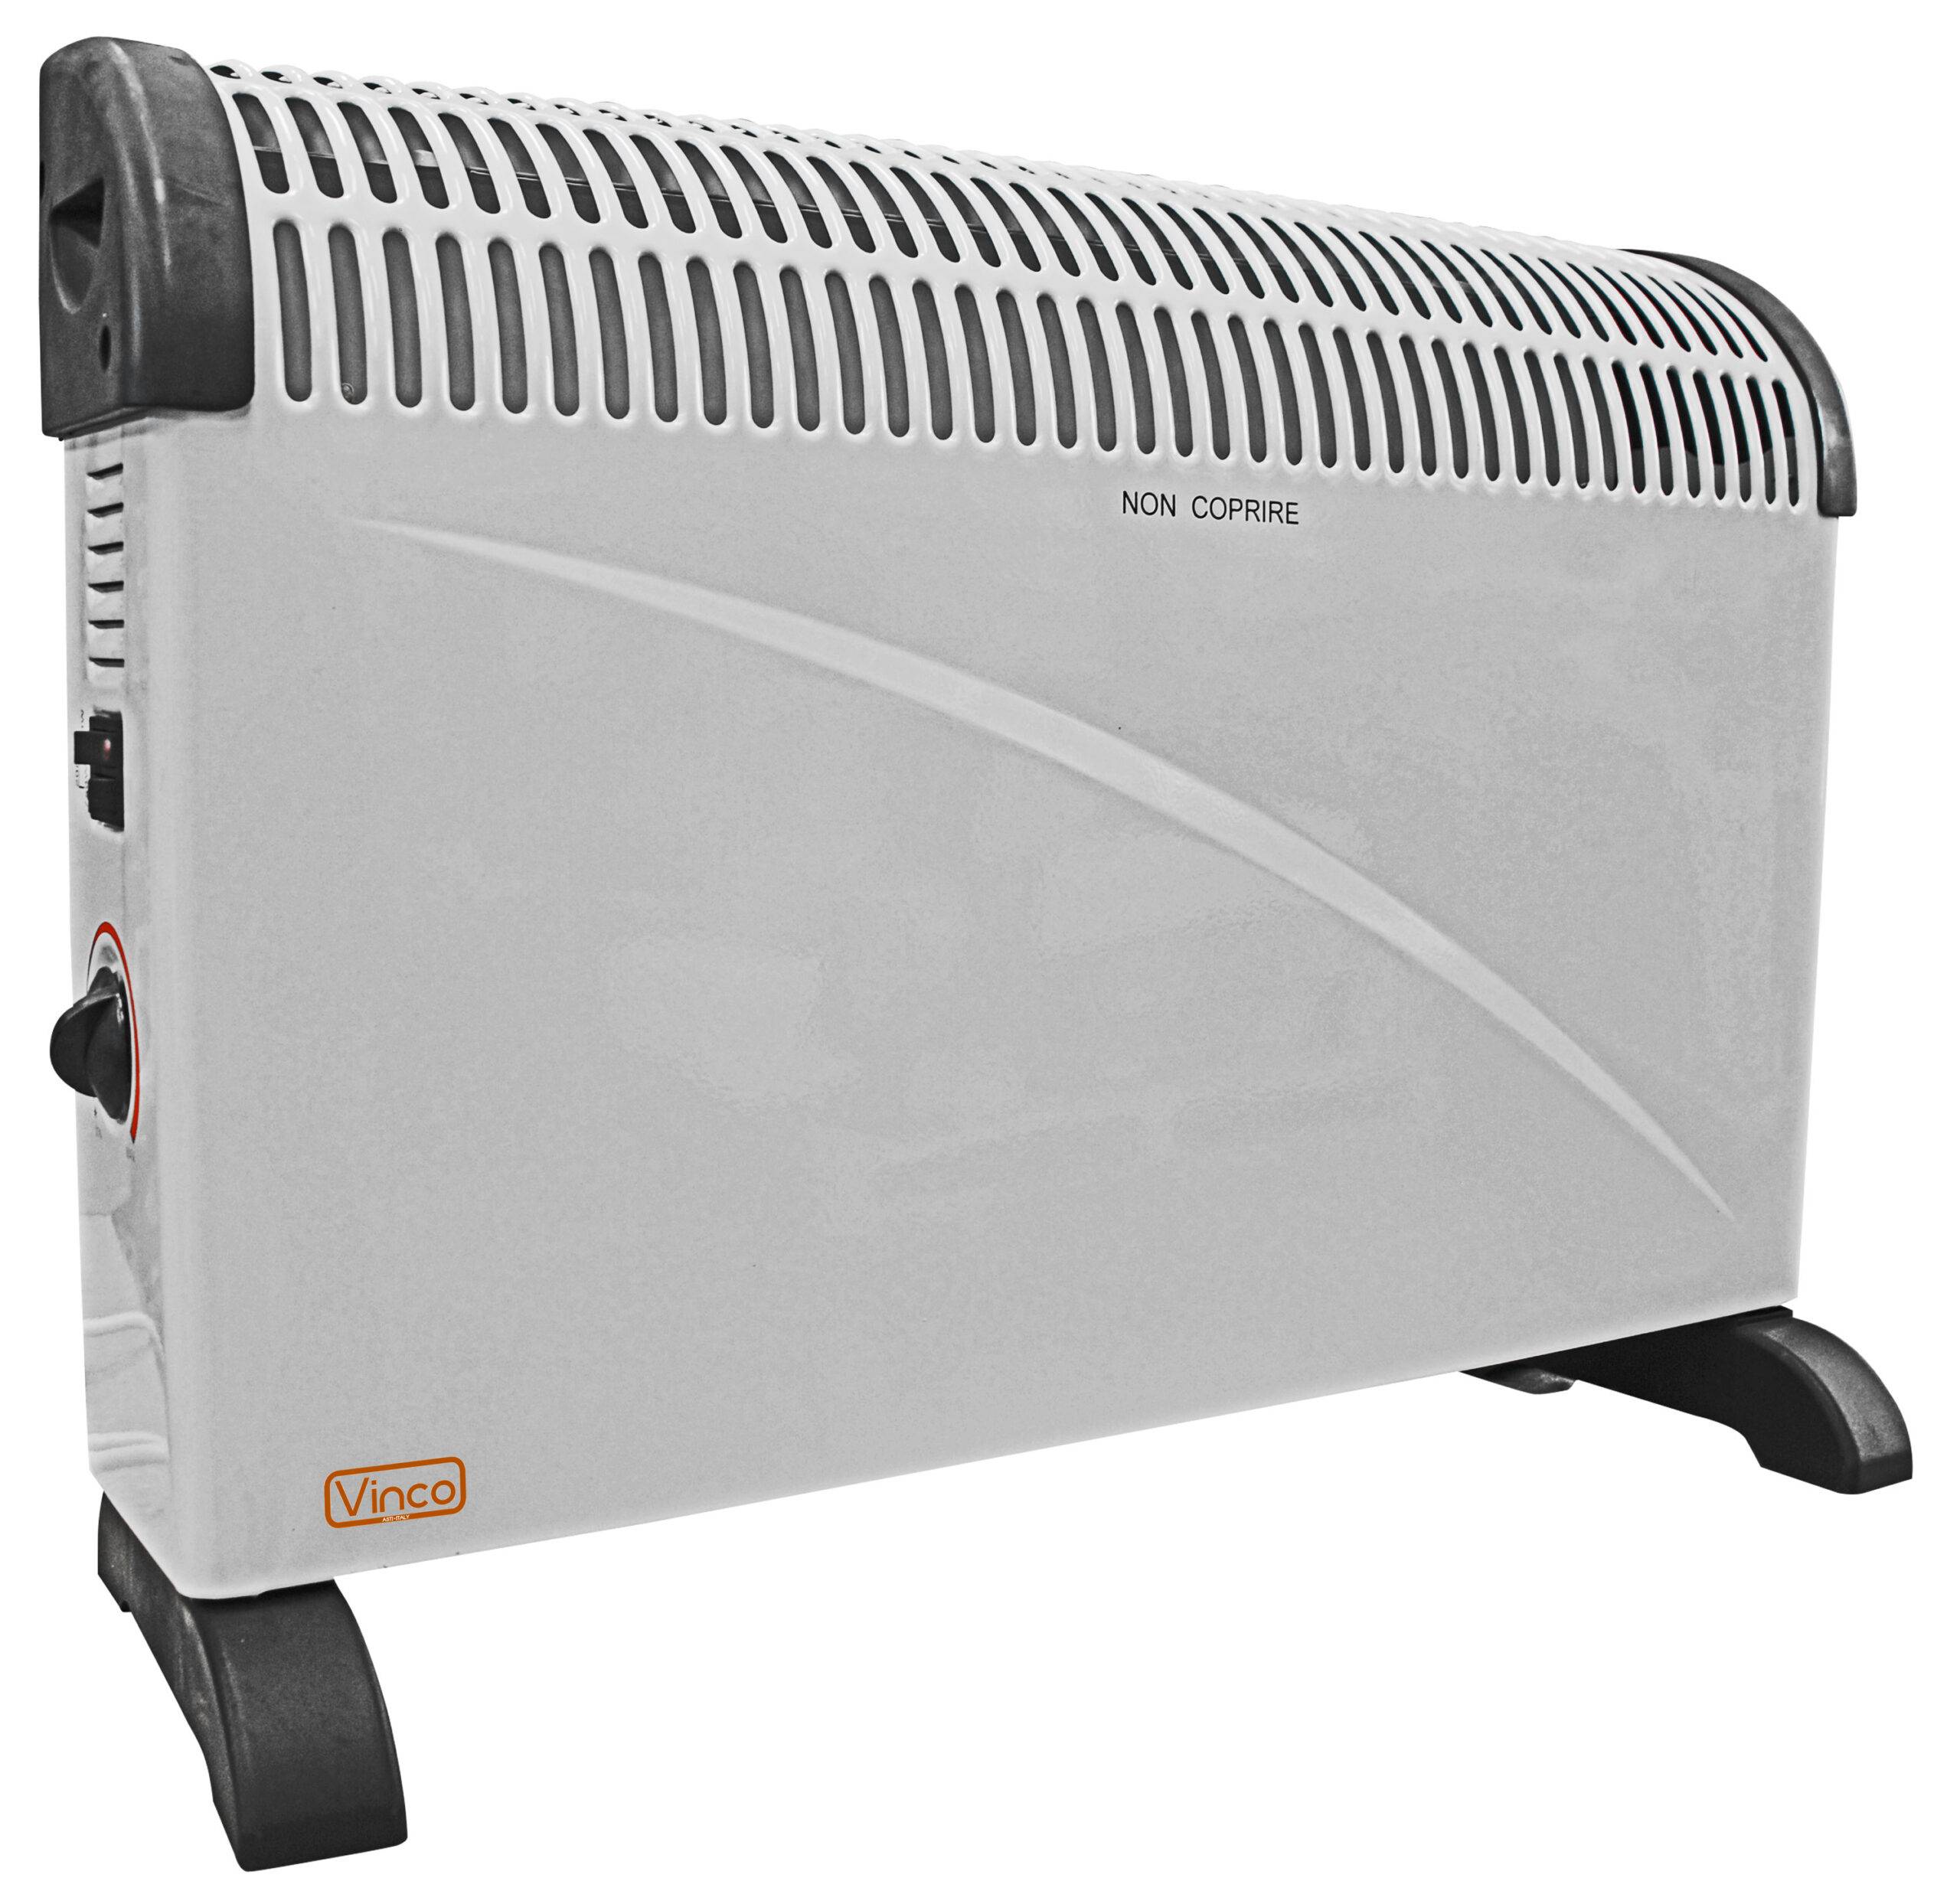 Termoconvettore con protezione anti-surriscaldamento – 2000 W